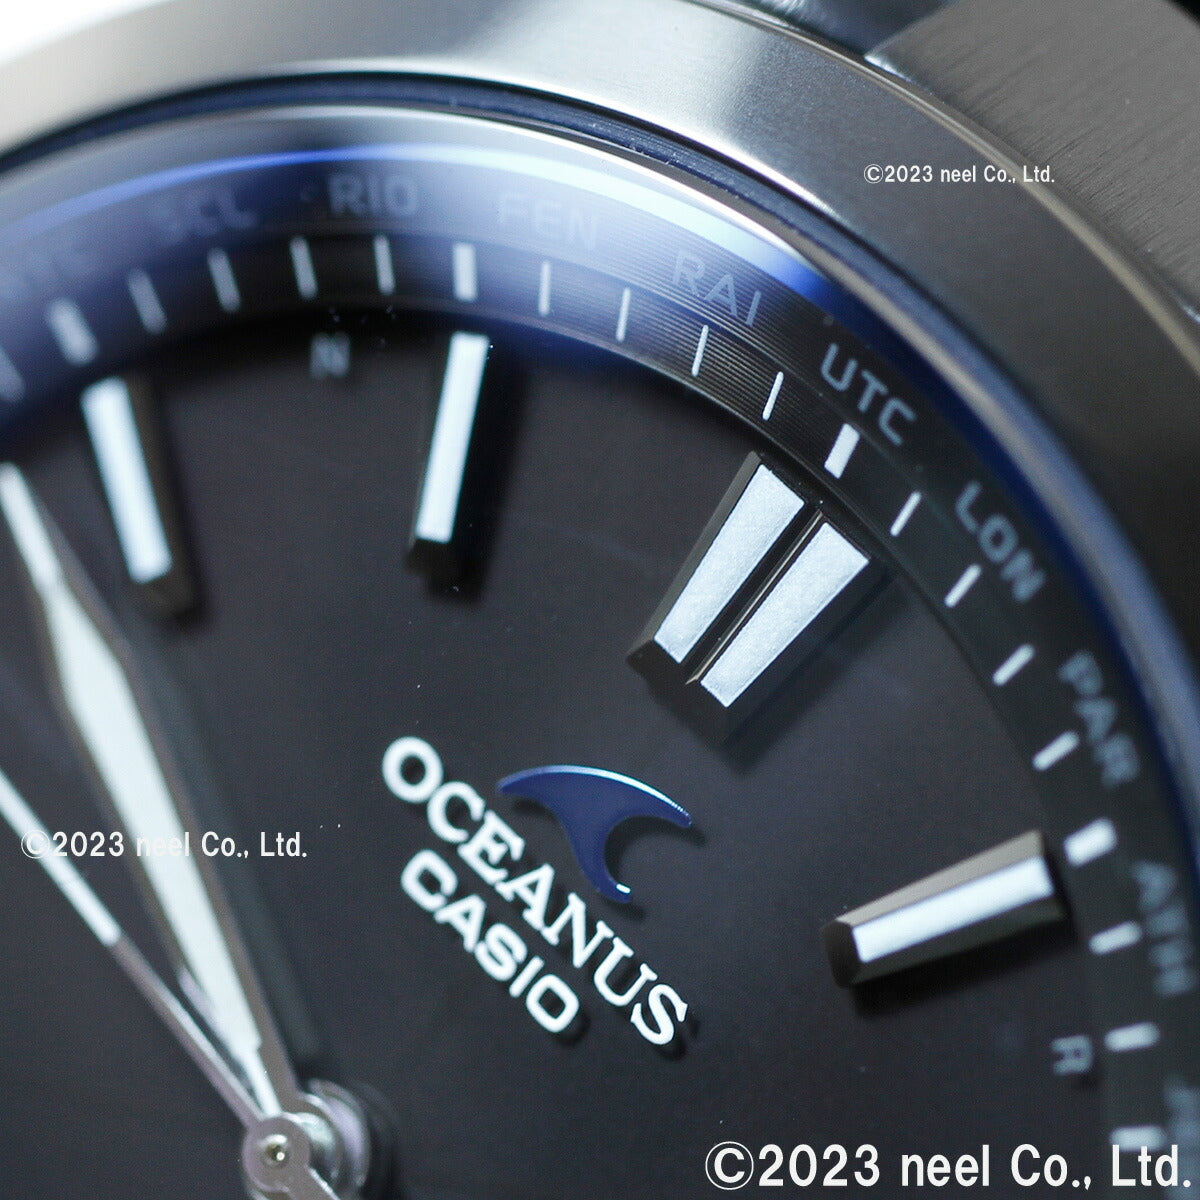 カシオ オシアナス CASIO OCEANUS 電波 ソーラー 電波時計 腕時計 メンズ アナログ OCW-S100B-1AJF